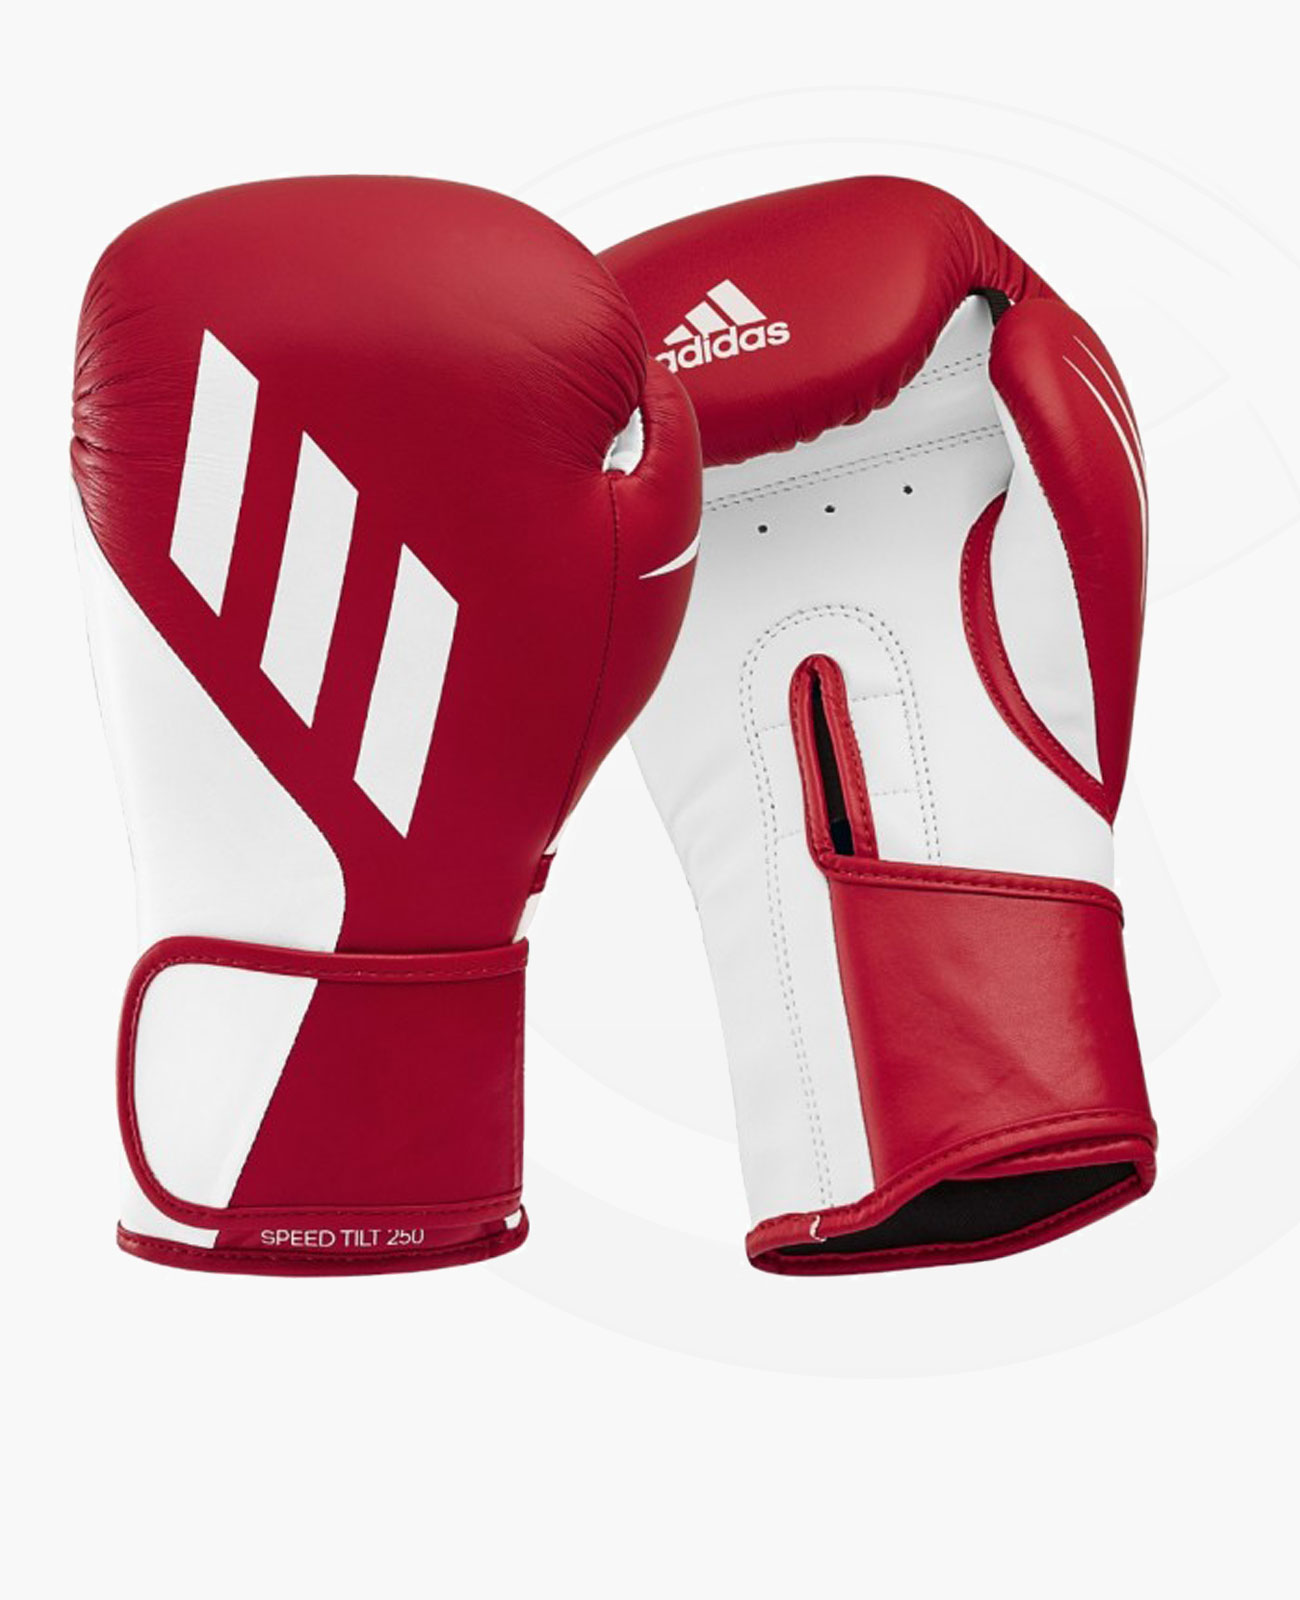 adidas TILT 250 Boxhandschuhe rot weiss | Fightshop & Budo Ausrüstung | Boxhandschuhe